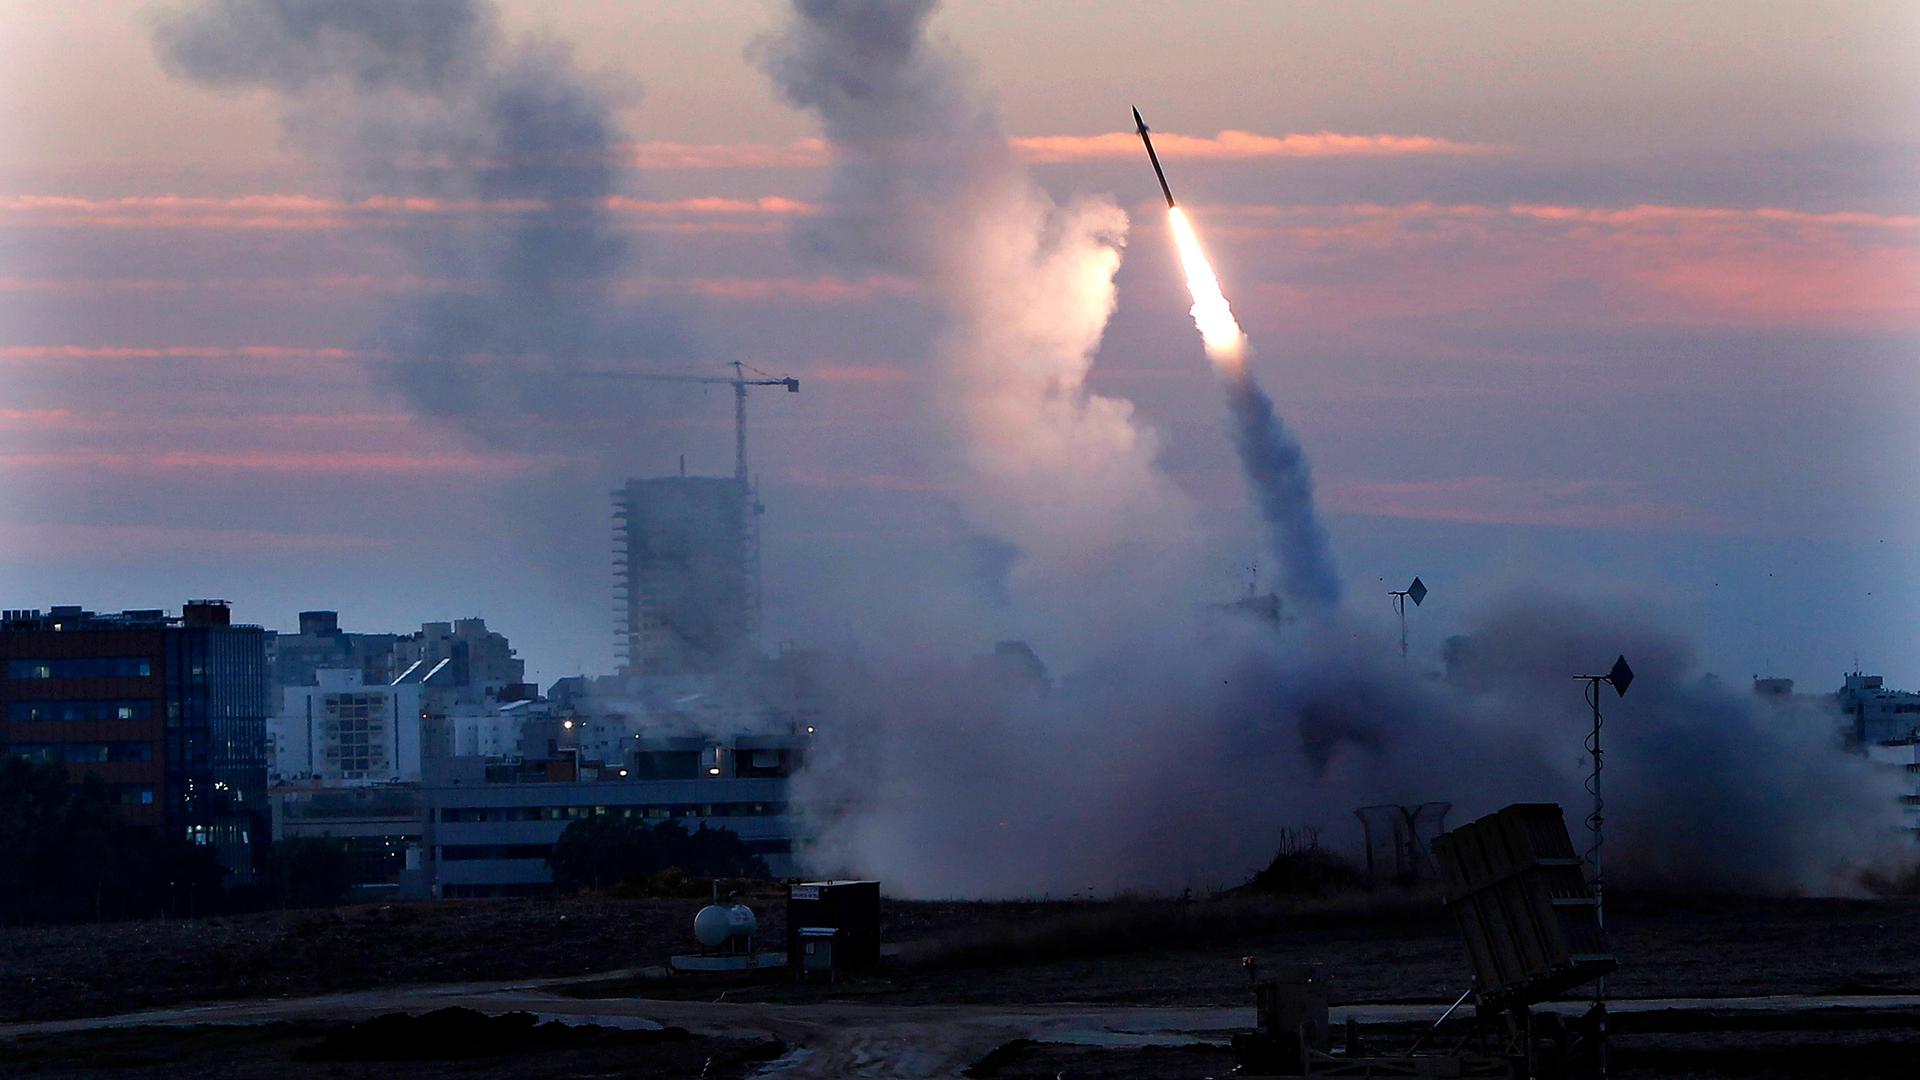 Das Bild zeigt das Iron Dome Abwehrsystem in Israel. Rauchwolken und eine Rakete vor einem rot gefärbten Himmel.